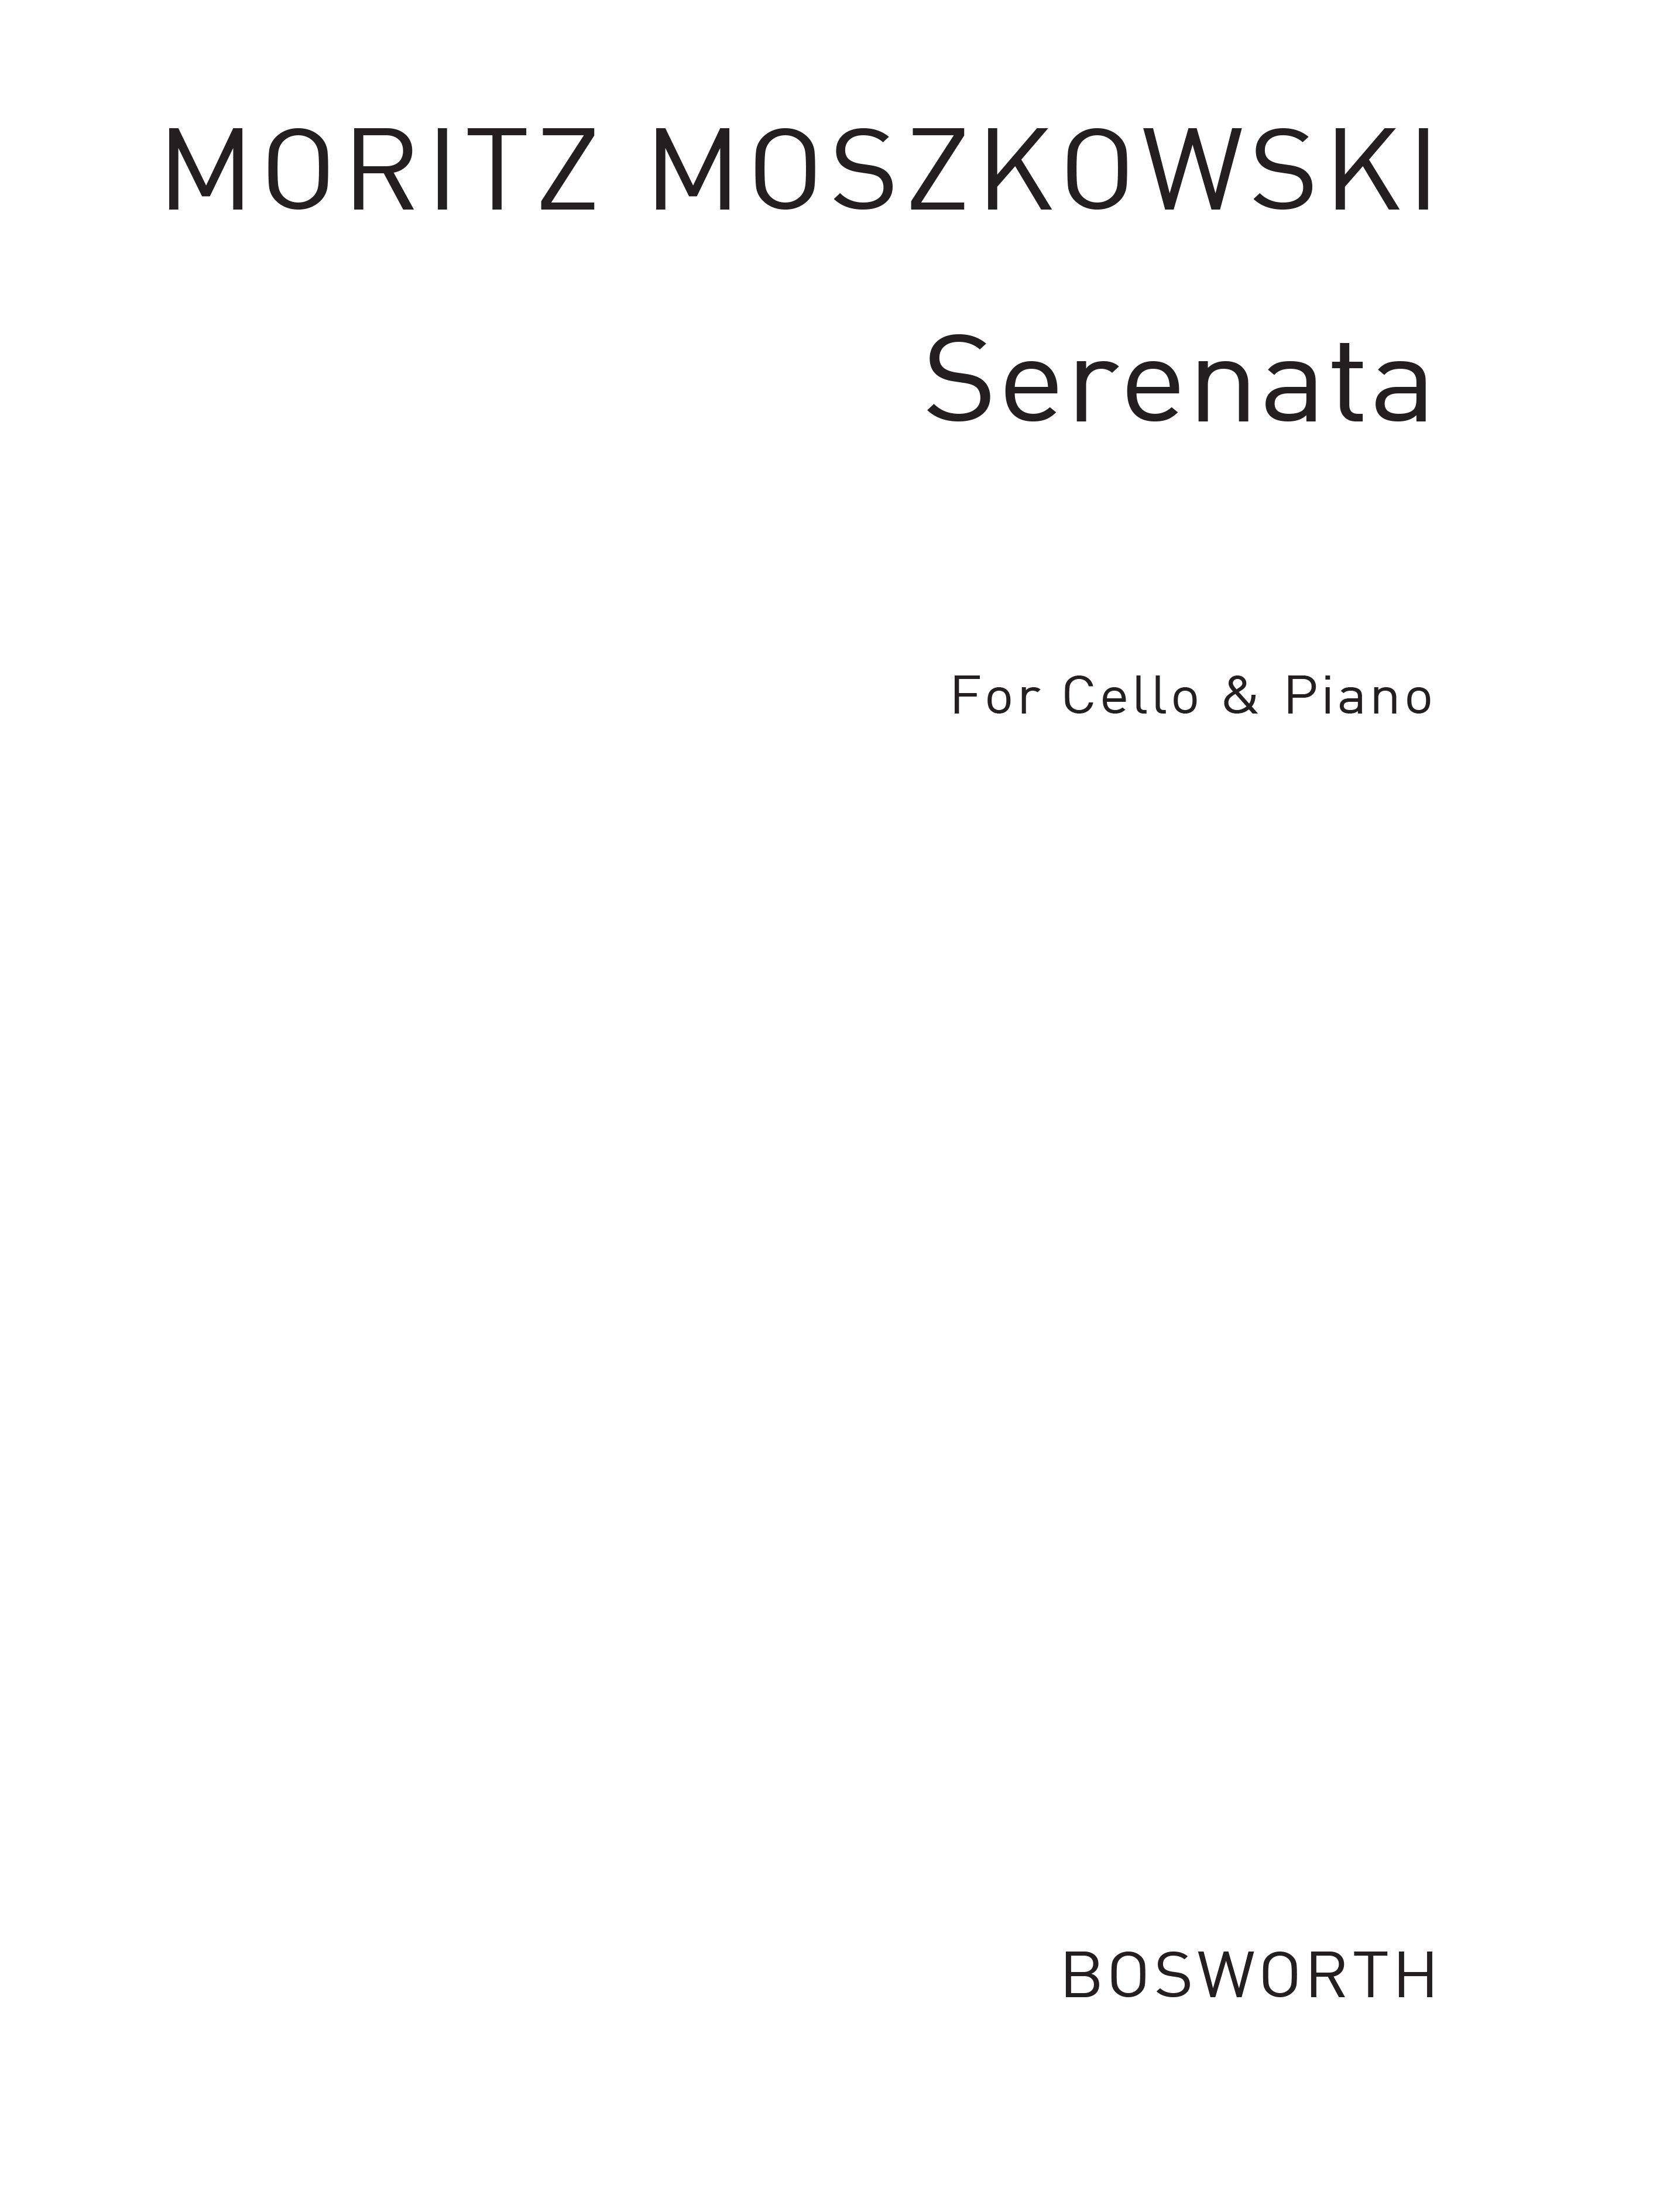 Moritz Moszkowski: Serenade For Cello And Piano Op.15 No.1: Cello: Instrumental